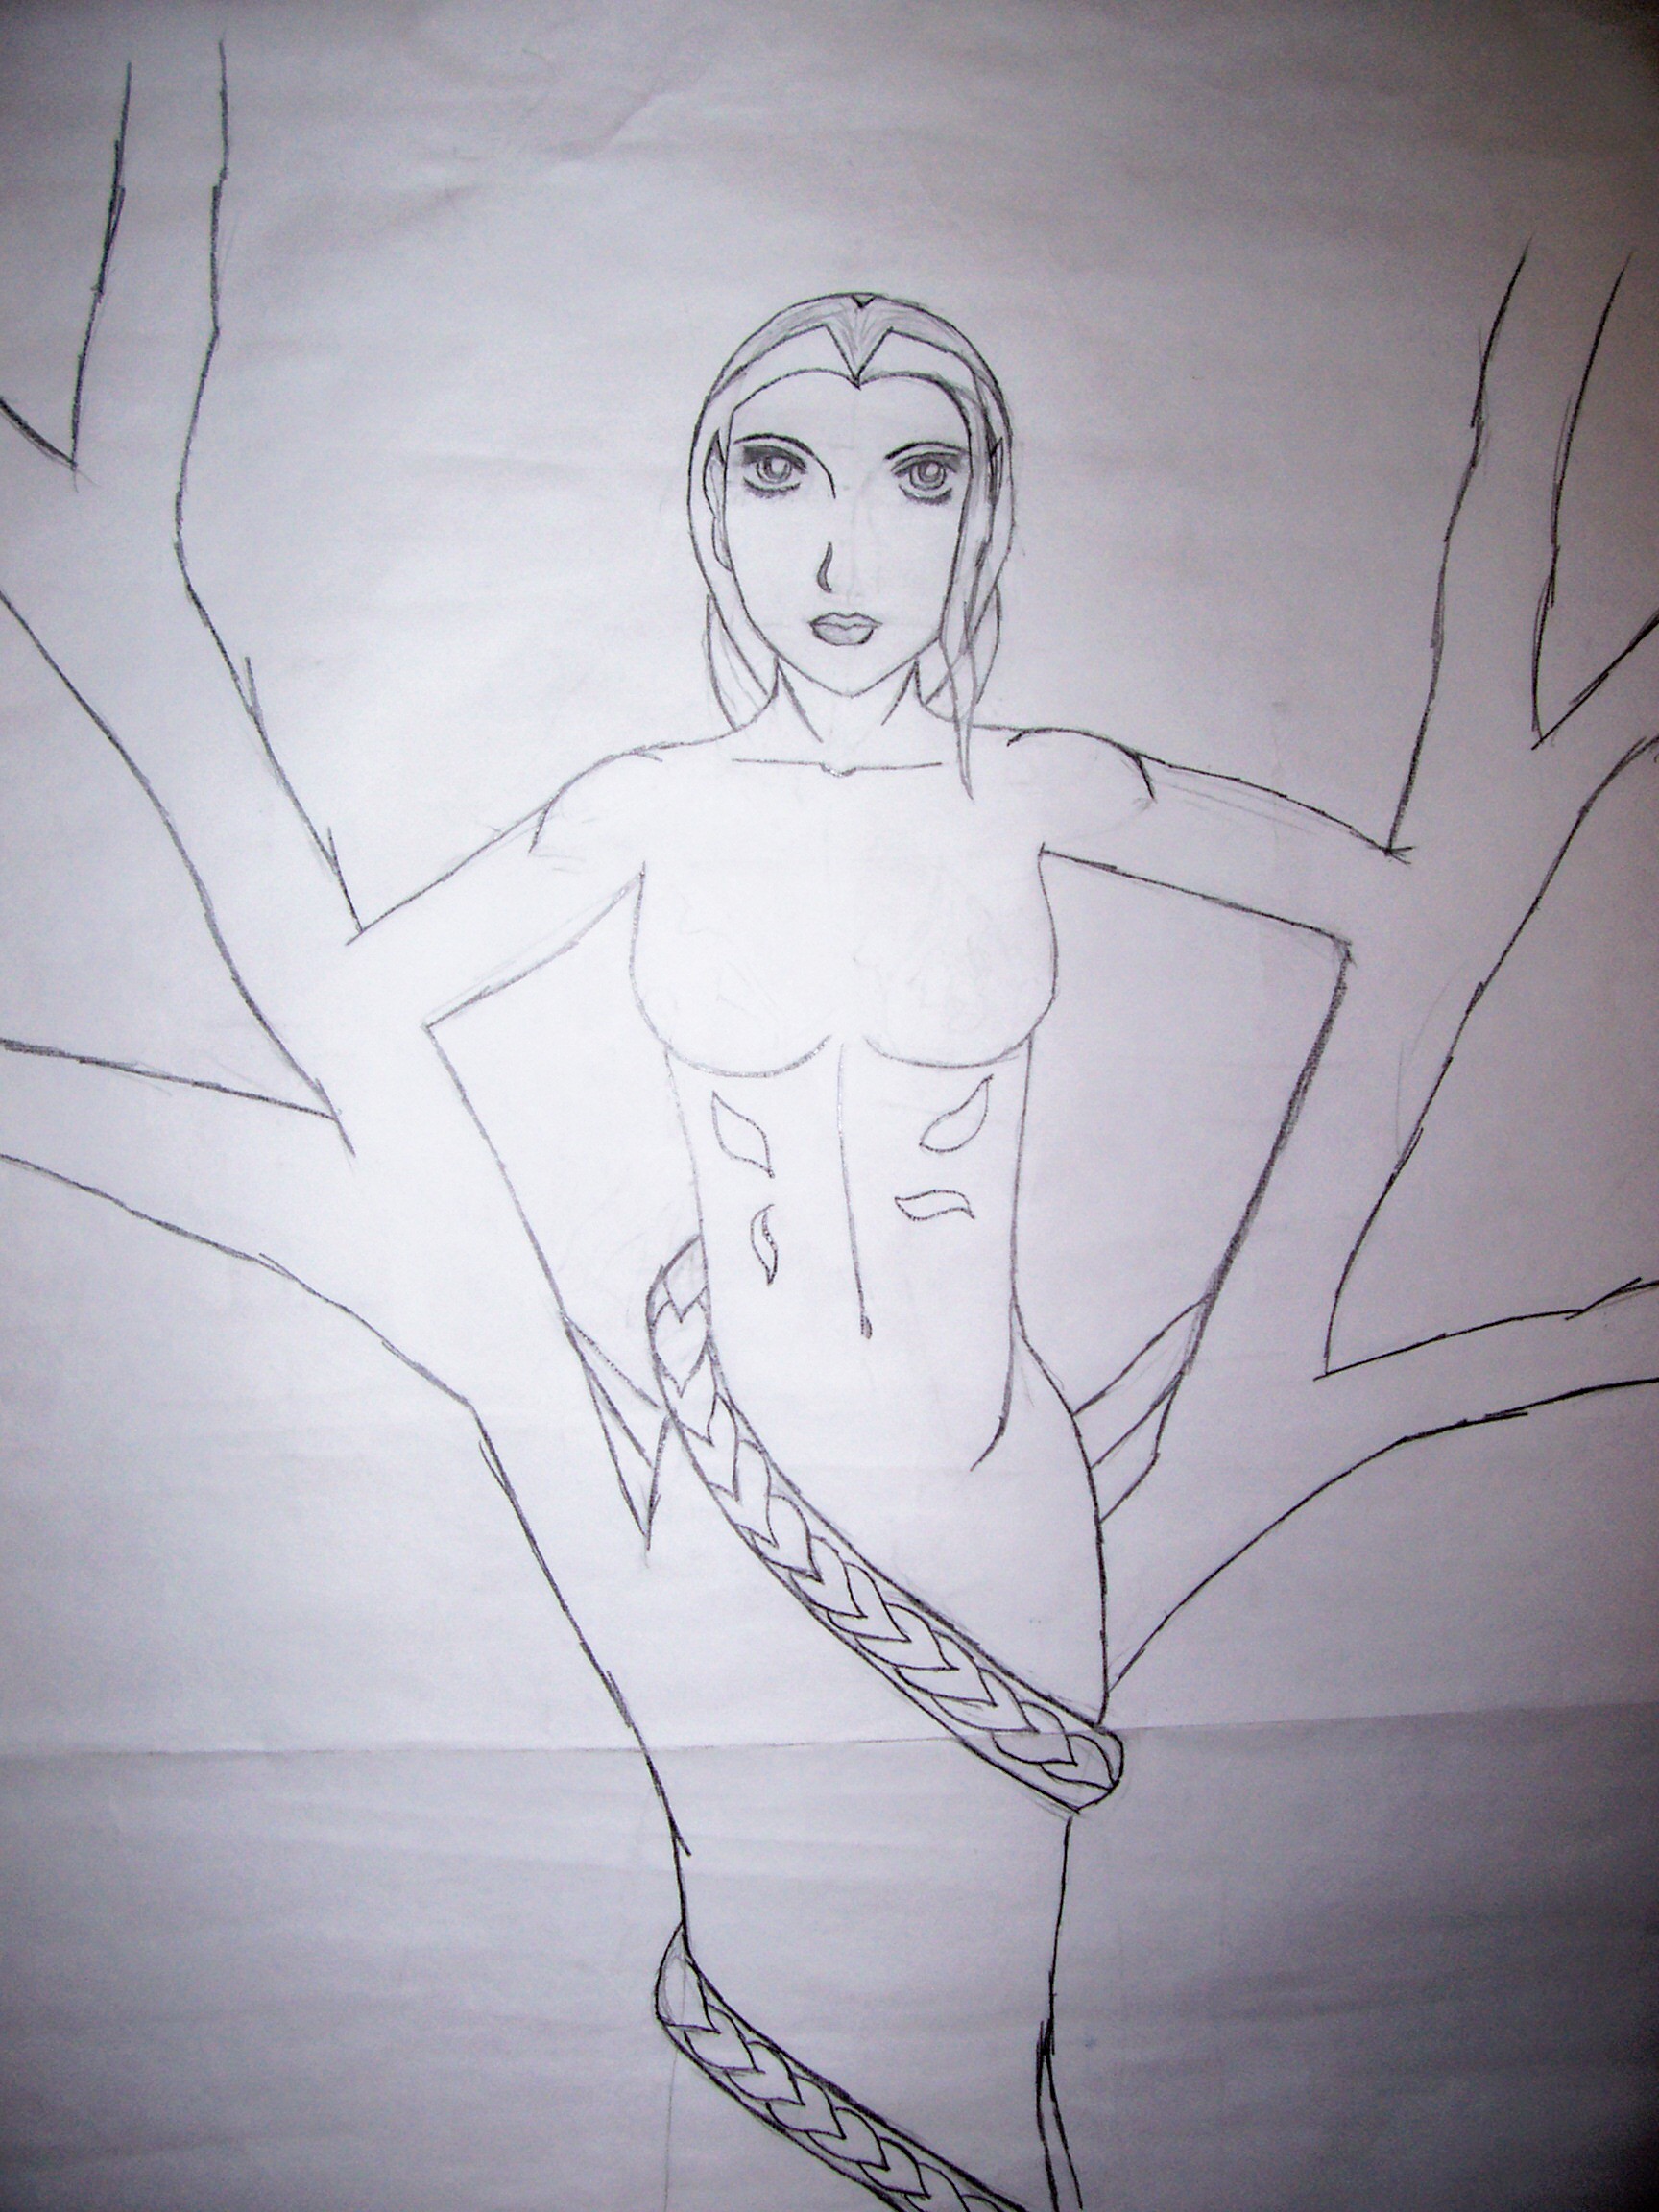 tree guardian final sketch by mediator